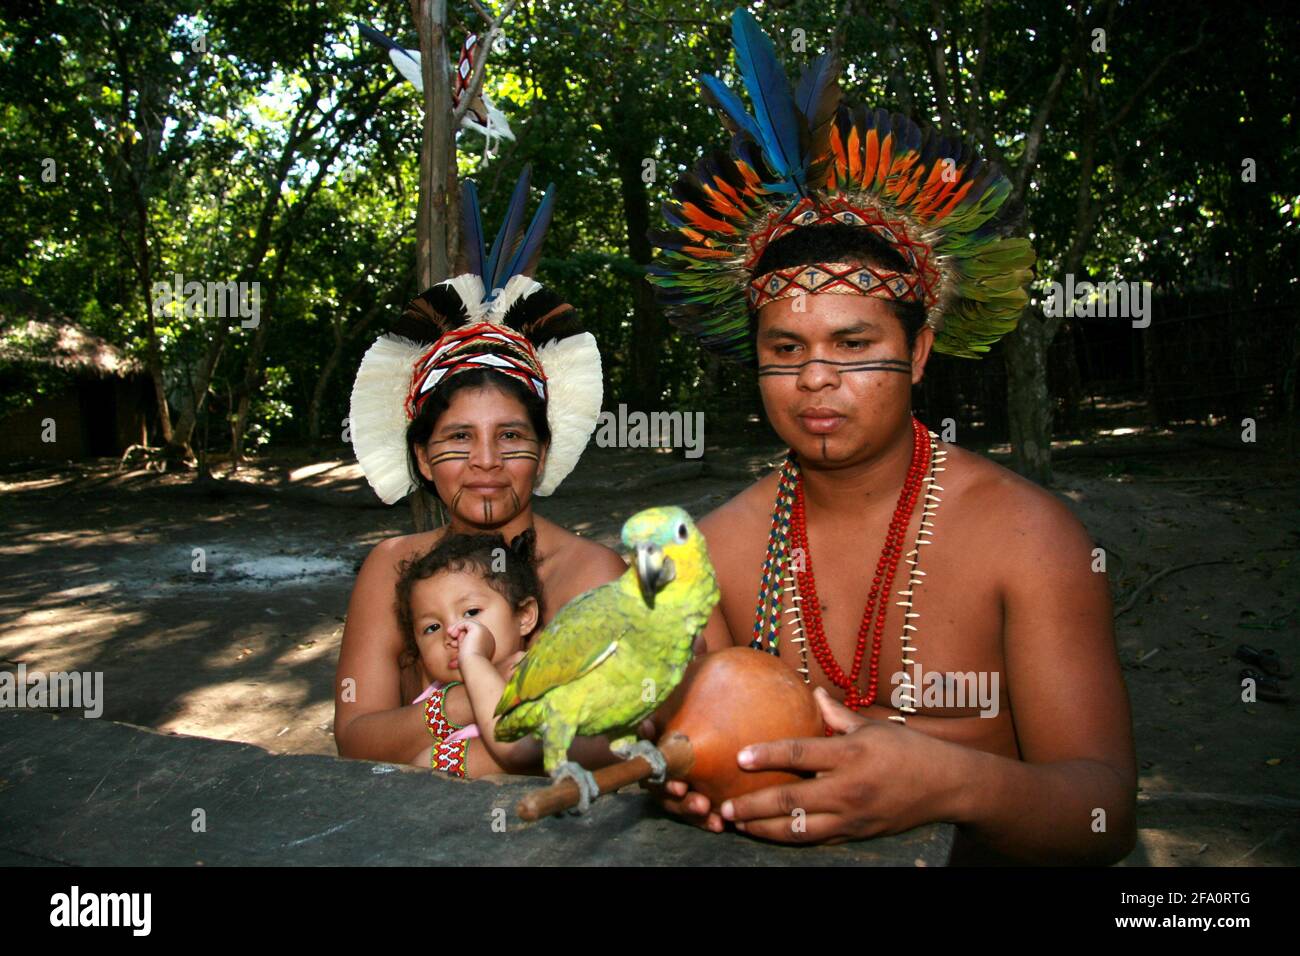 porto Seguro, bahia, brésil - 4 août 2008 : on voit des indiens de l'ethine Pataxo dans le village de Jaqueira, dans la ville de Porto Seguro, au sud Banque D'Images